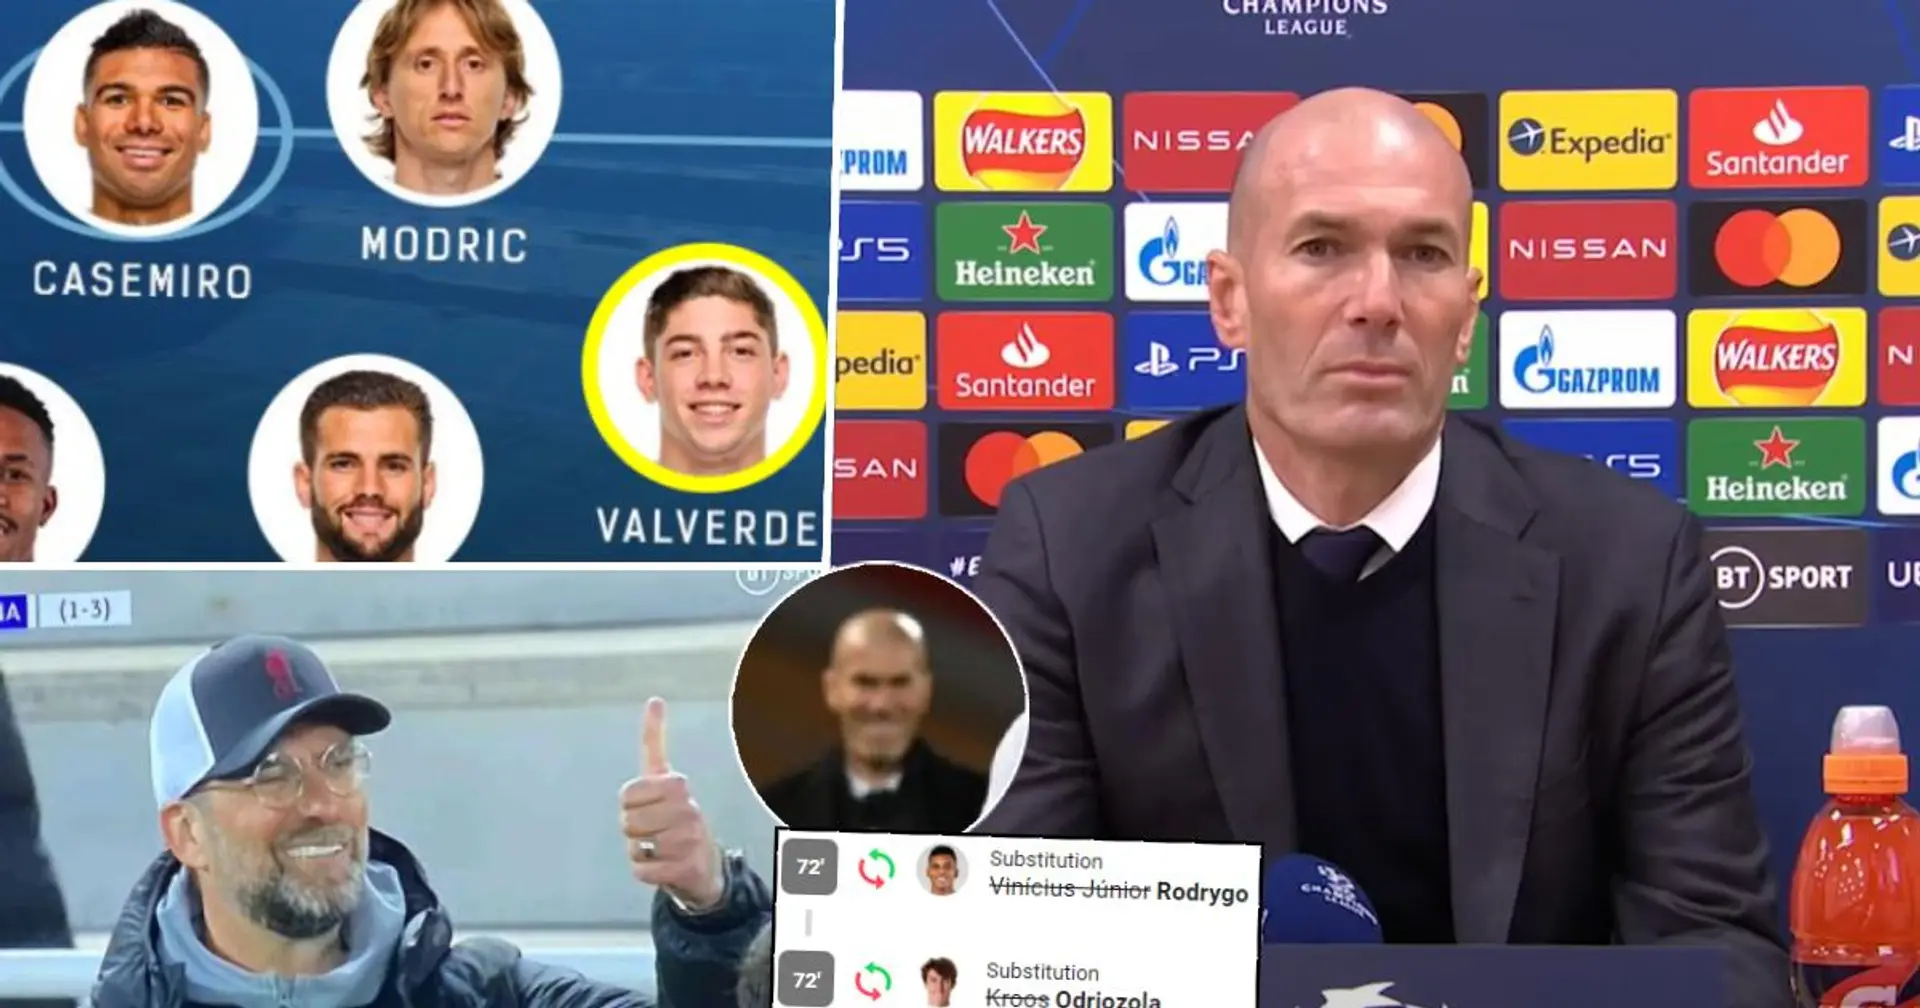 Coup de génie de Valverde et les changements au bon moment: notez les décisions de Zidane après le match nul vs Liverpool